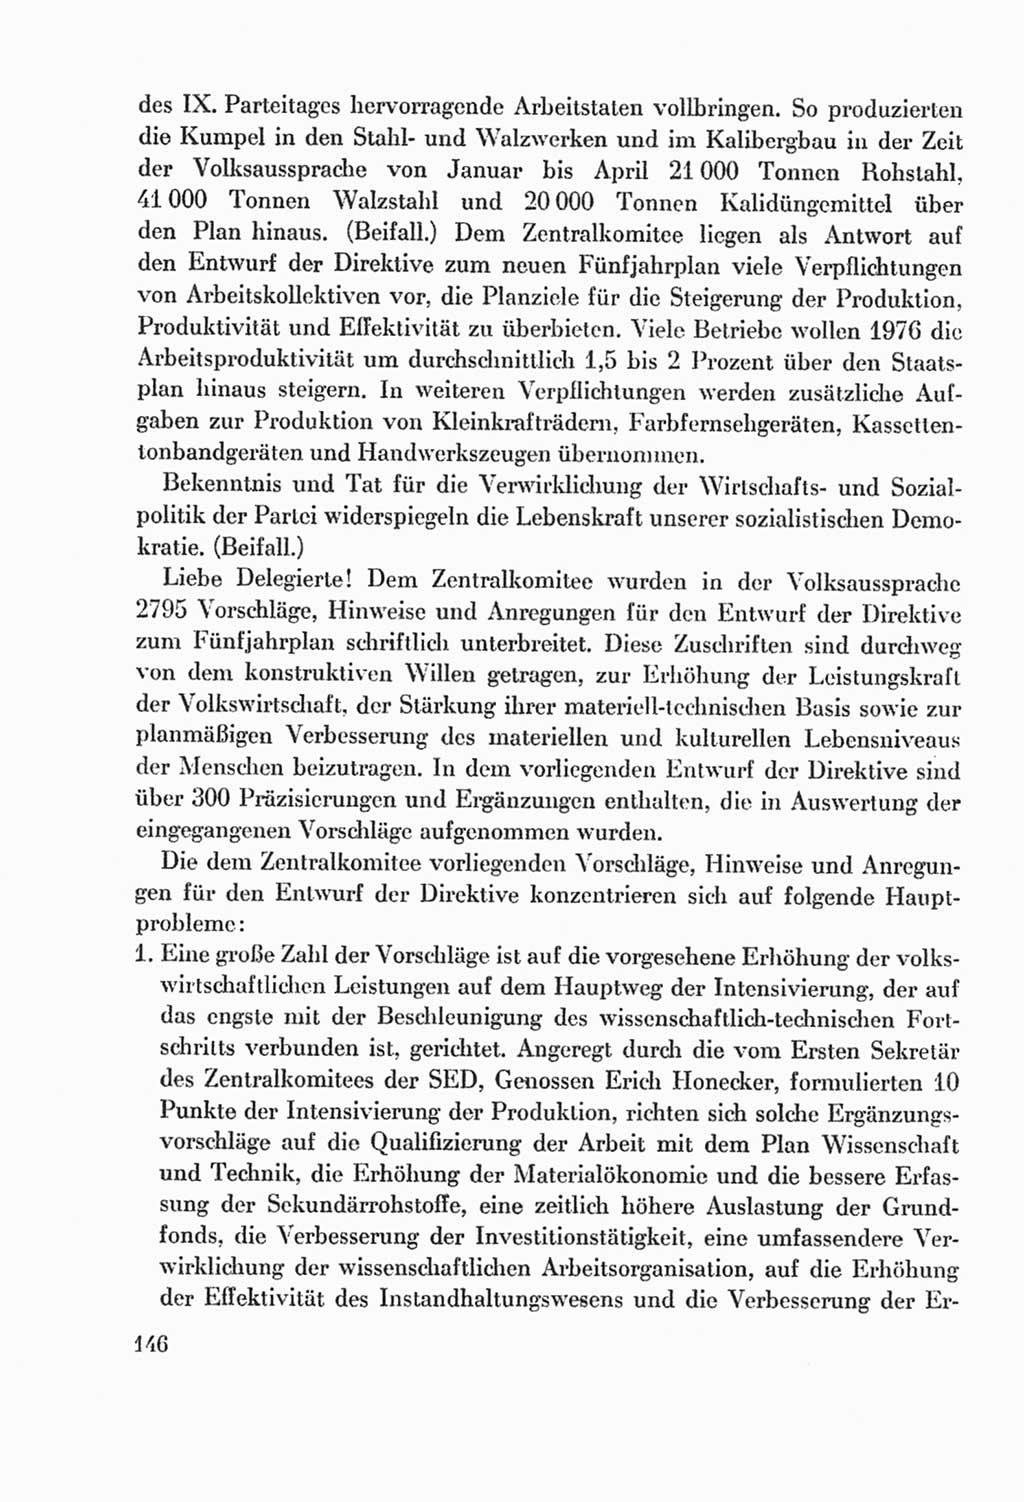 Protokoll der Verhandlungen des Ⅸ. Parteitages der Sozialistischen Einheitspartei Deutschlands (SED) [Deutsche Demokratische Republik (DDR)] 1976, Band 2, Seite 146 (Prot. Verh. Ⅸ. PT SED DDR 1976, Bd. 2, S. 146)